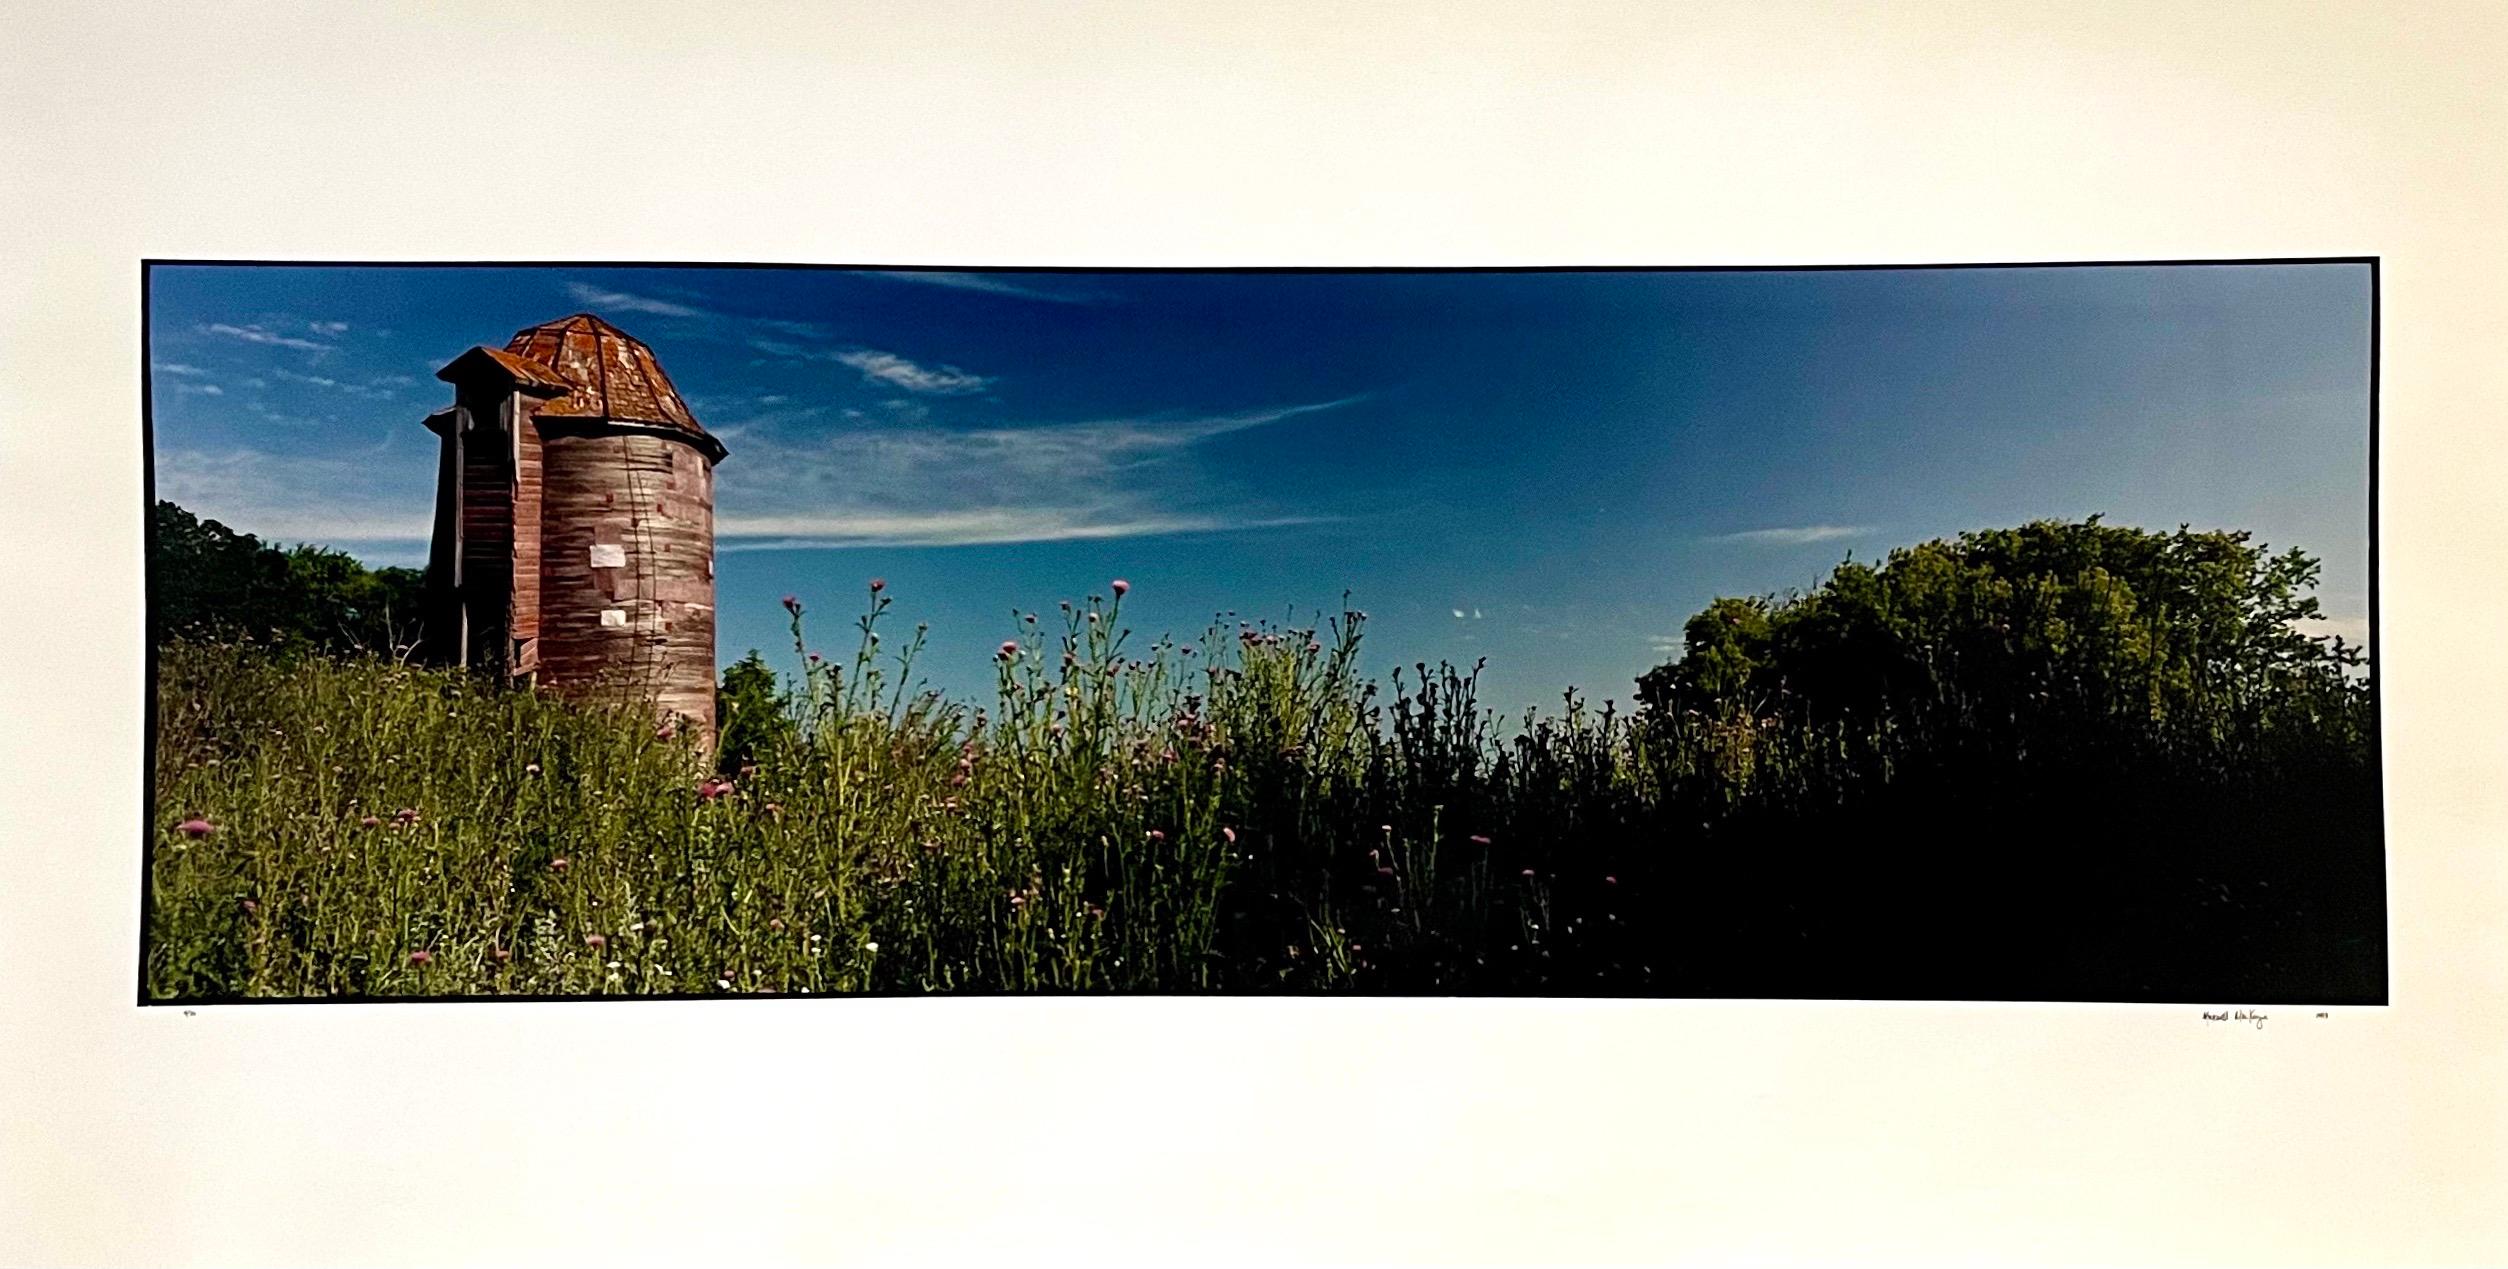 Landscape Photograph Maxwell Mackenzie - Paysage d'été de ferme, grande photographie Panoramique couleur vintage signée